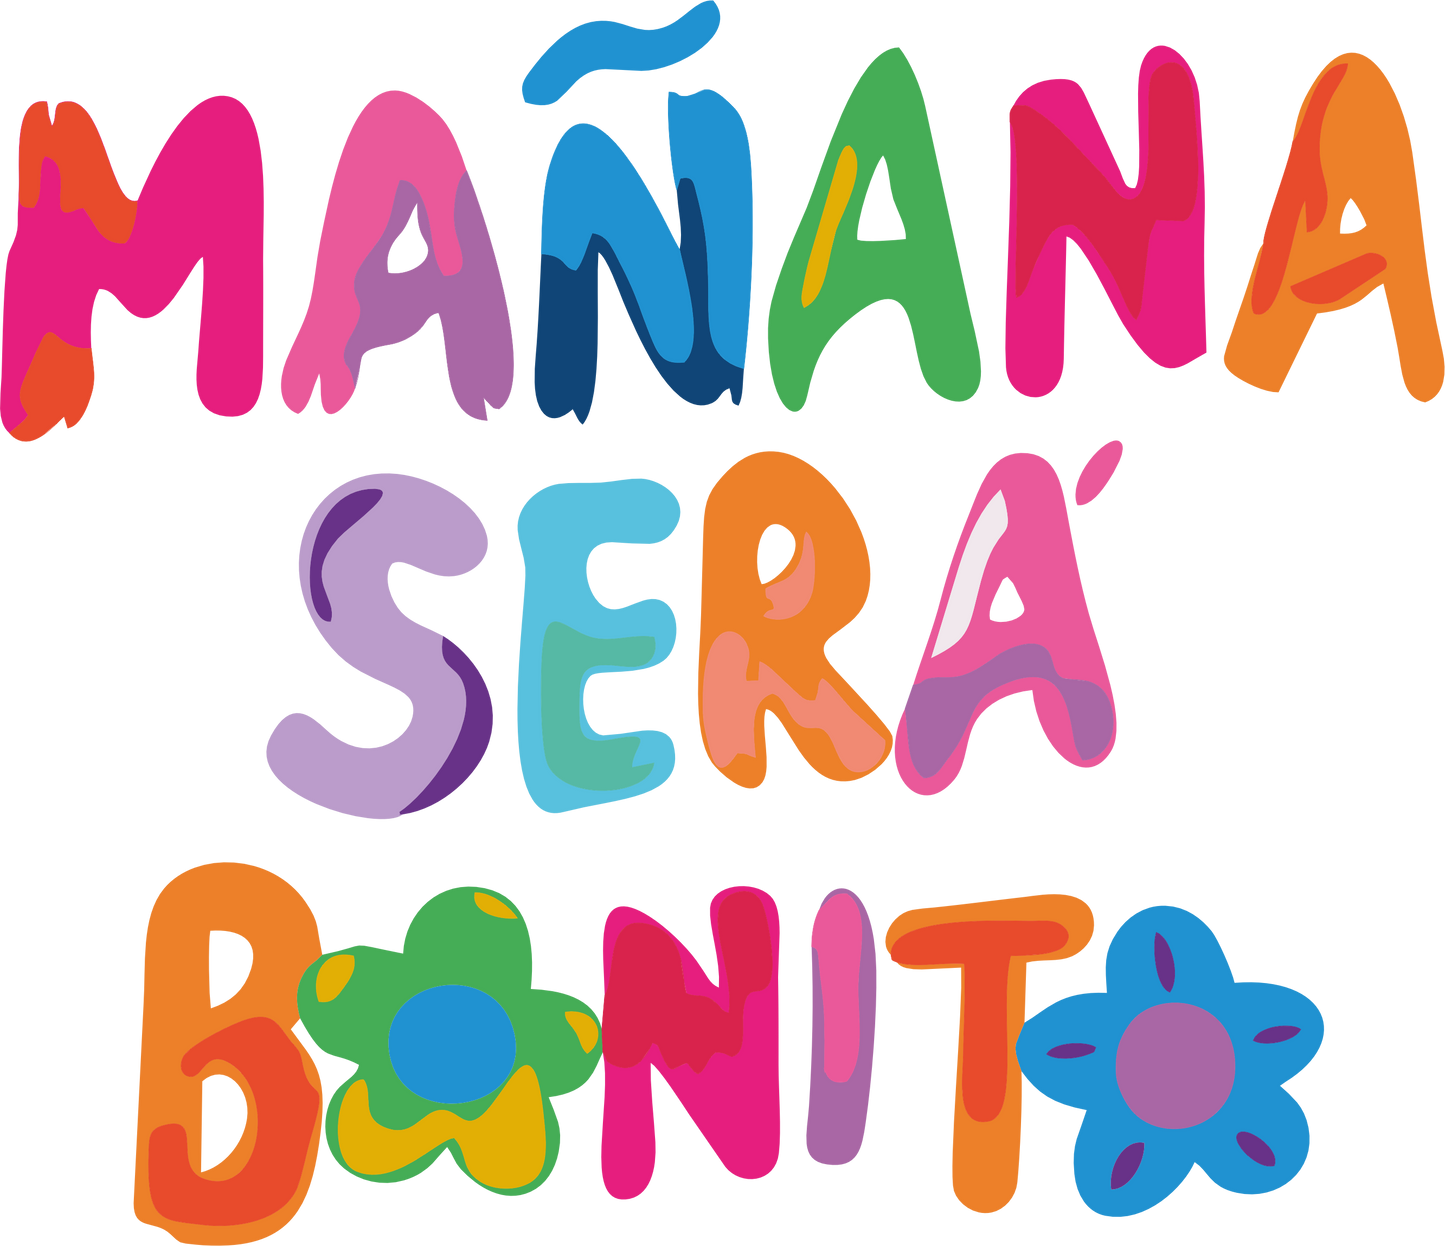 Manana Sera Bonito Set